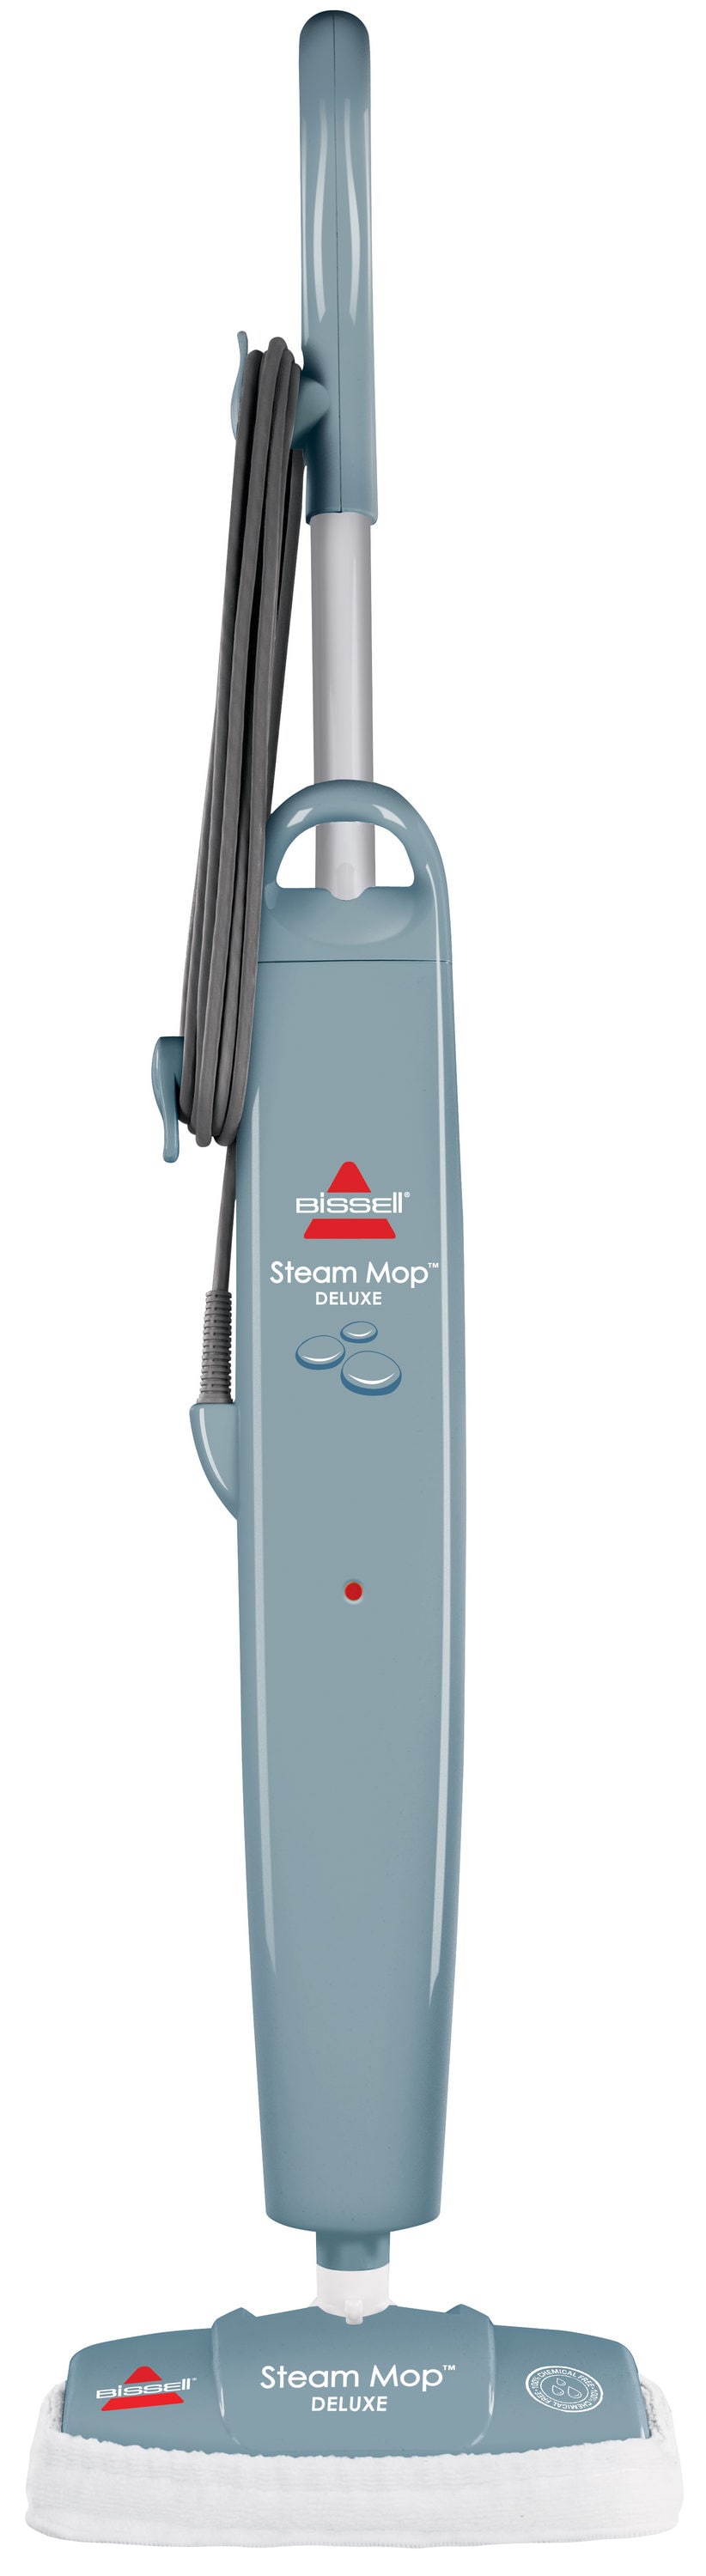 Steam Mop Deluxe 31N1